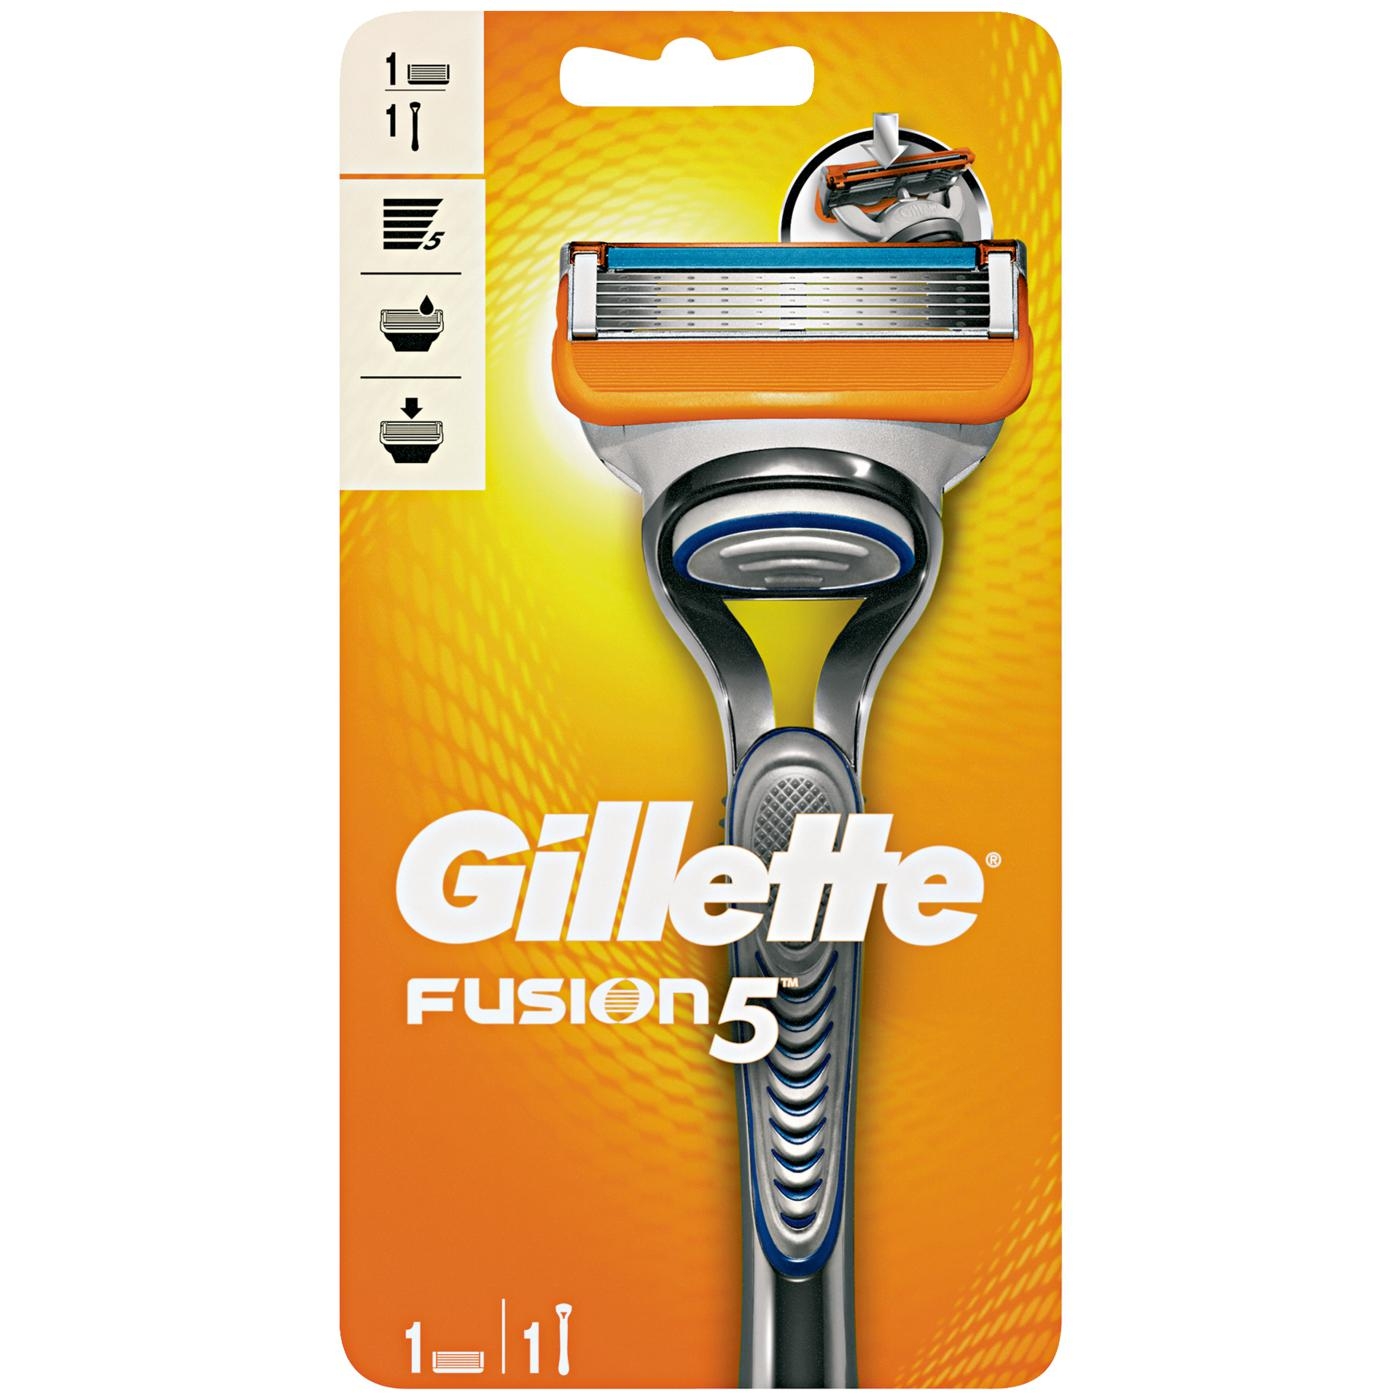 Dagaanbieding - Gillette Fusion5 Apparaat incl 1 mesje dagelijkse aanbiedingen